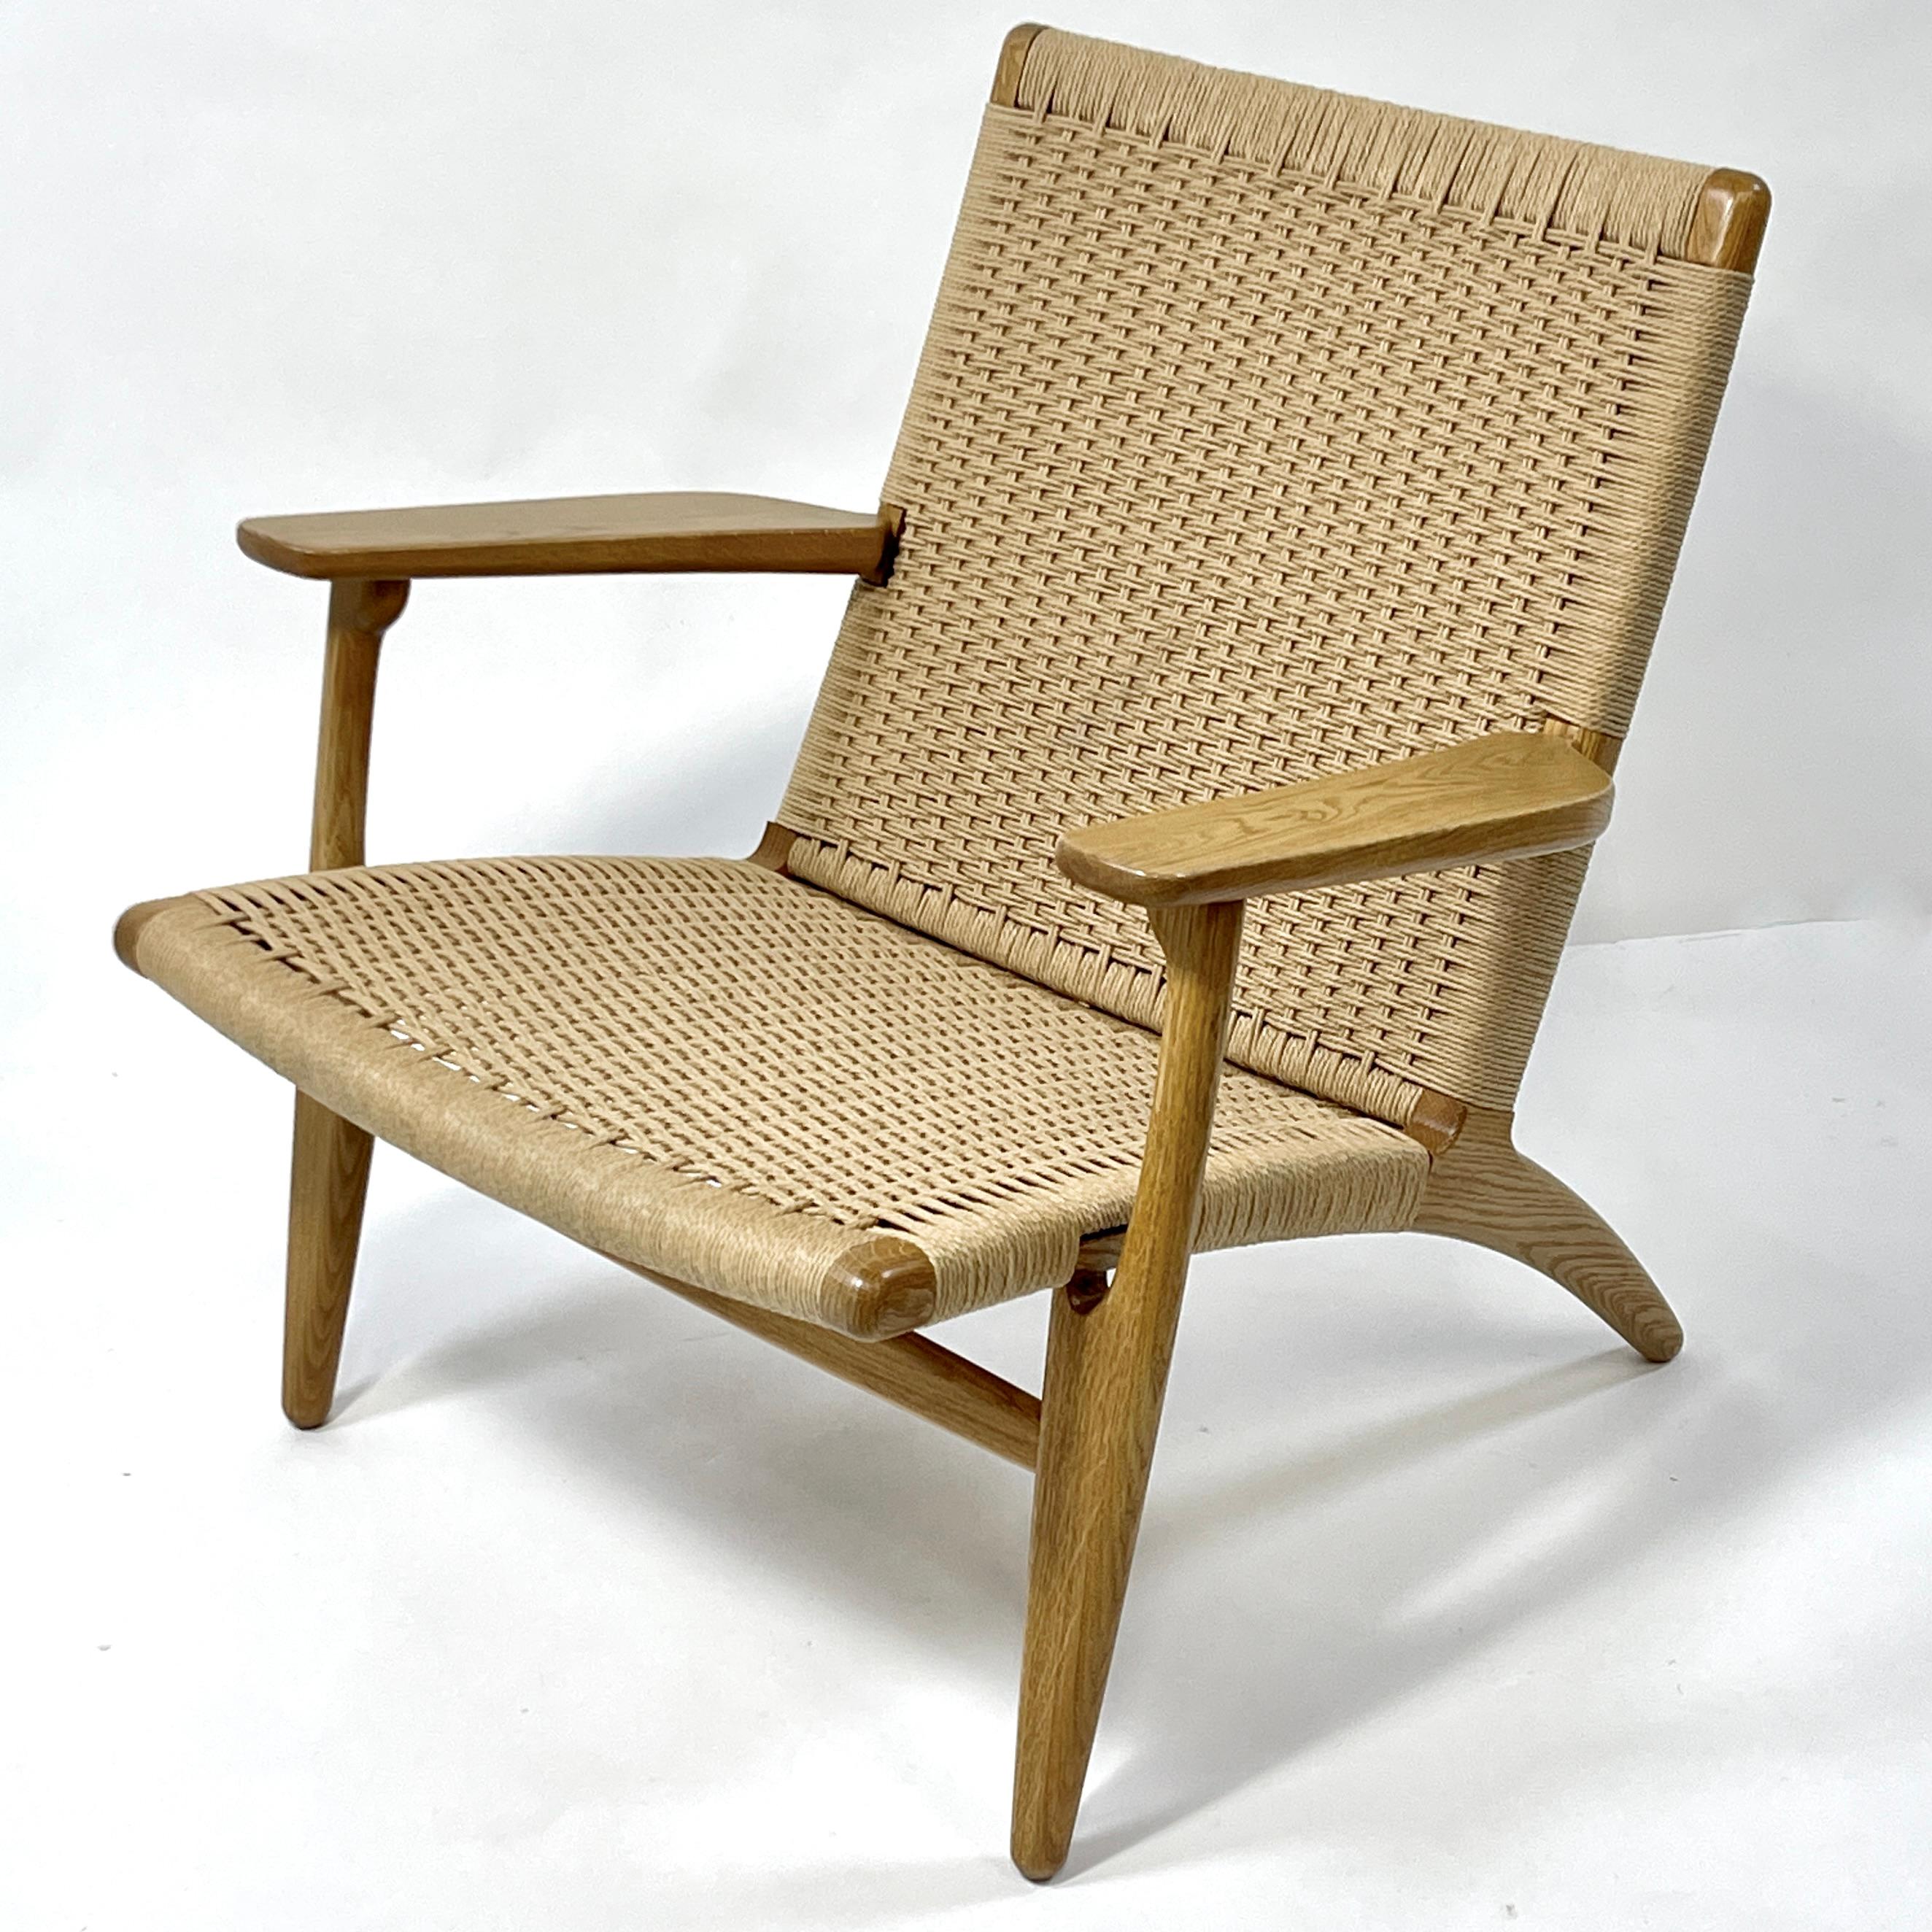 Il s'agit d'une chaise longue Hans Wegner, modèle CH25, en chêne huilé et papercord. Excellent et confortable. Construction solide faite à la main. Elle est toujours produite et distribuée par Carl Hansen & Son. Il s'agit d'une production plus